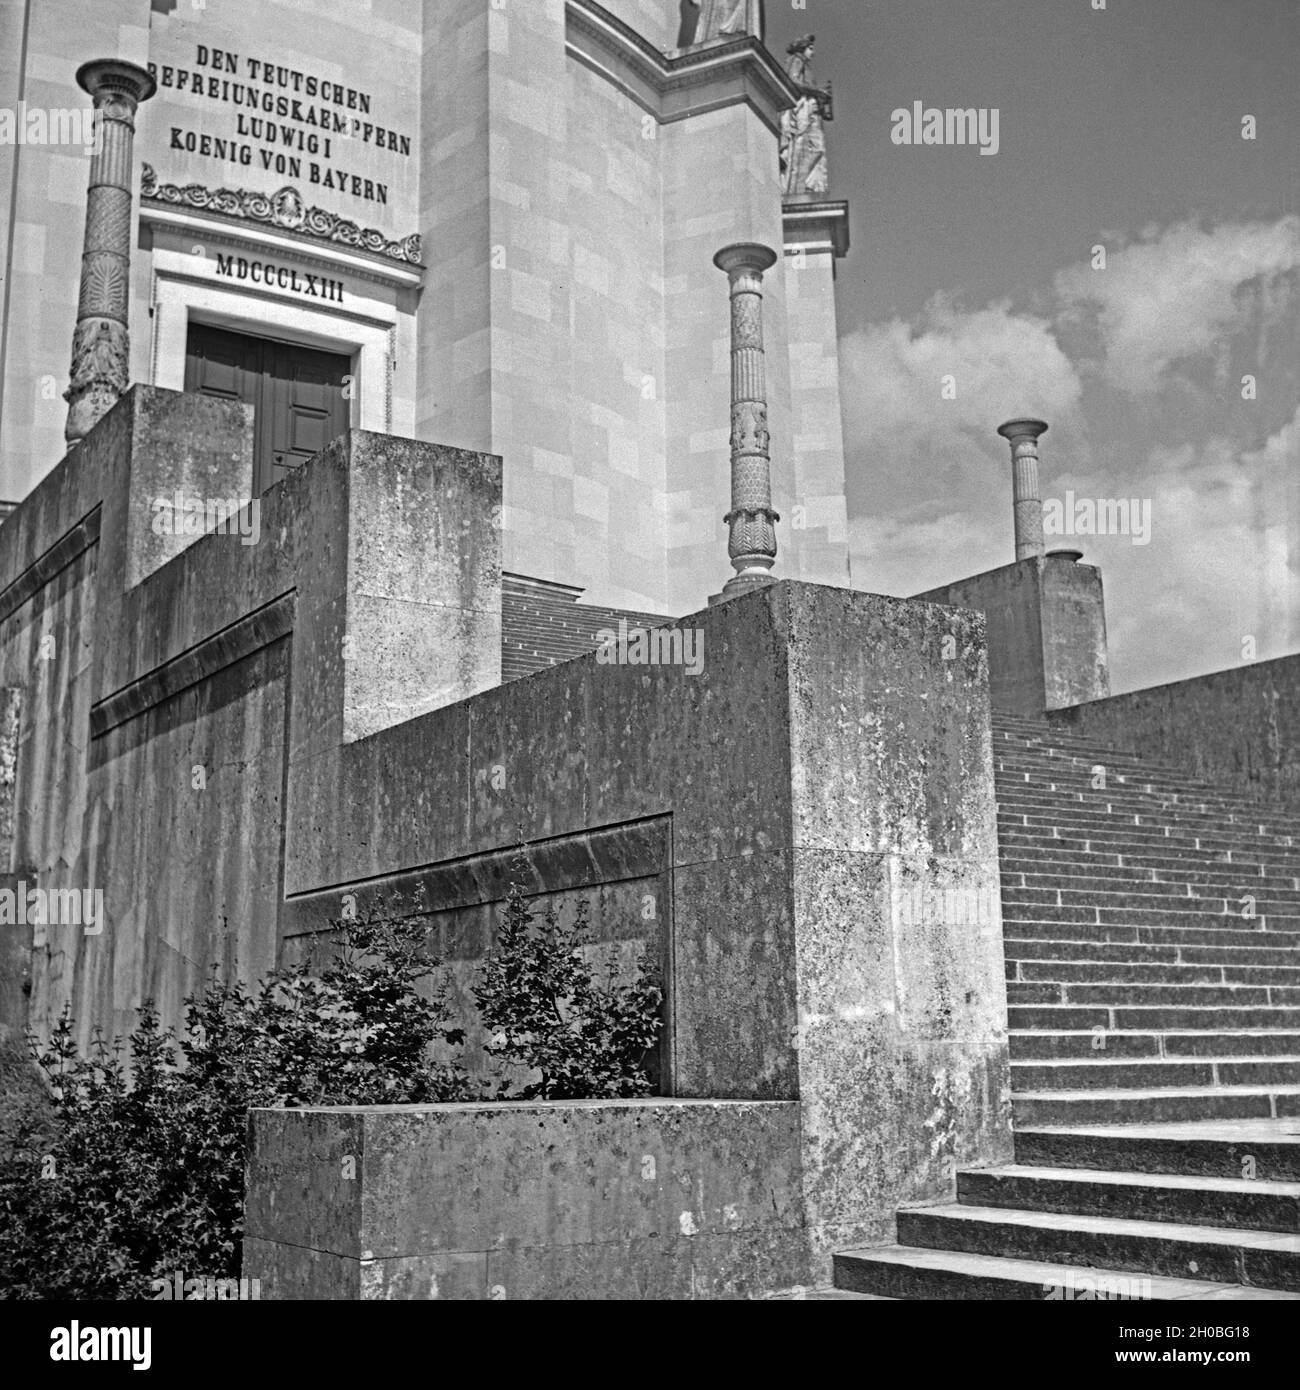 Treppe und Eingang zur Befreiungshalle auf dem Michelsberg bei Kelheim, Deutschland 1930er Jahre. Stairs and entrance to liberation hall at Michelsberg hill near Kelheim, Germany 1930s. Stock Photo